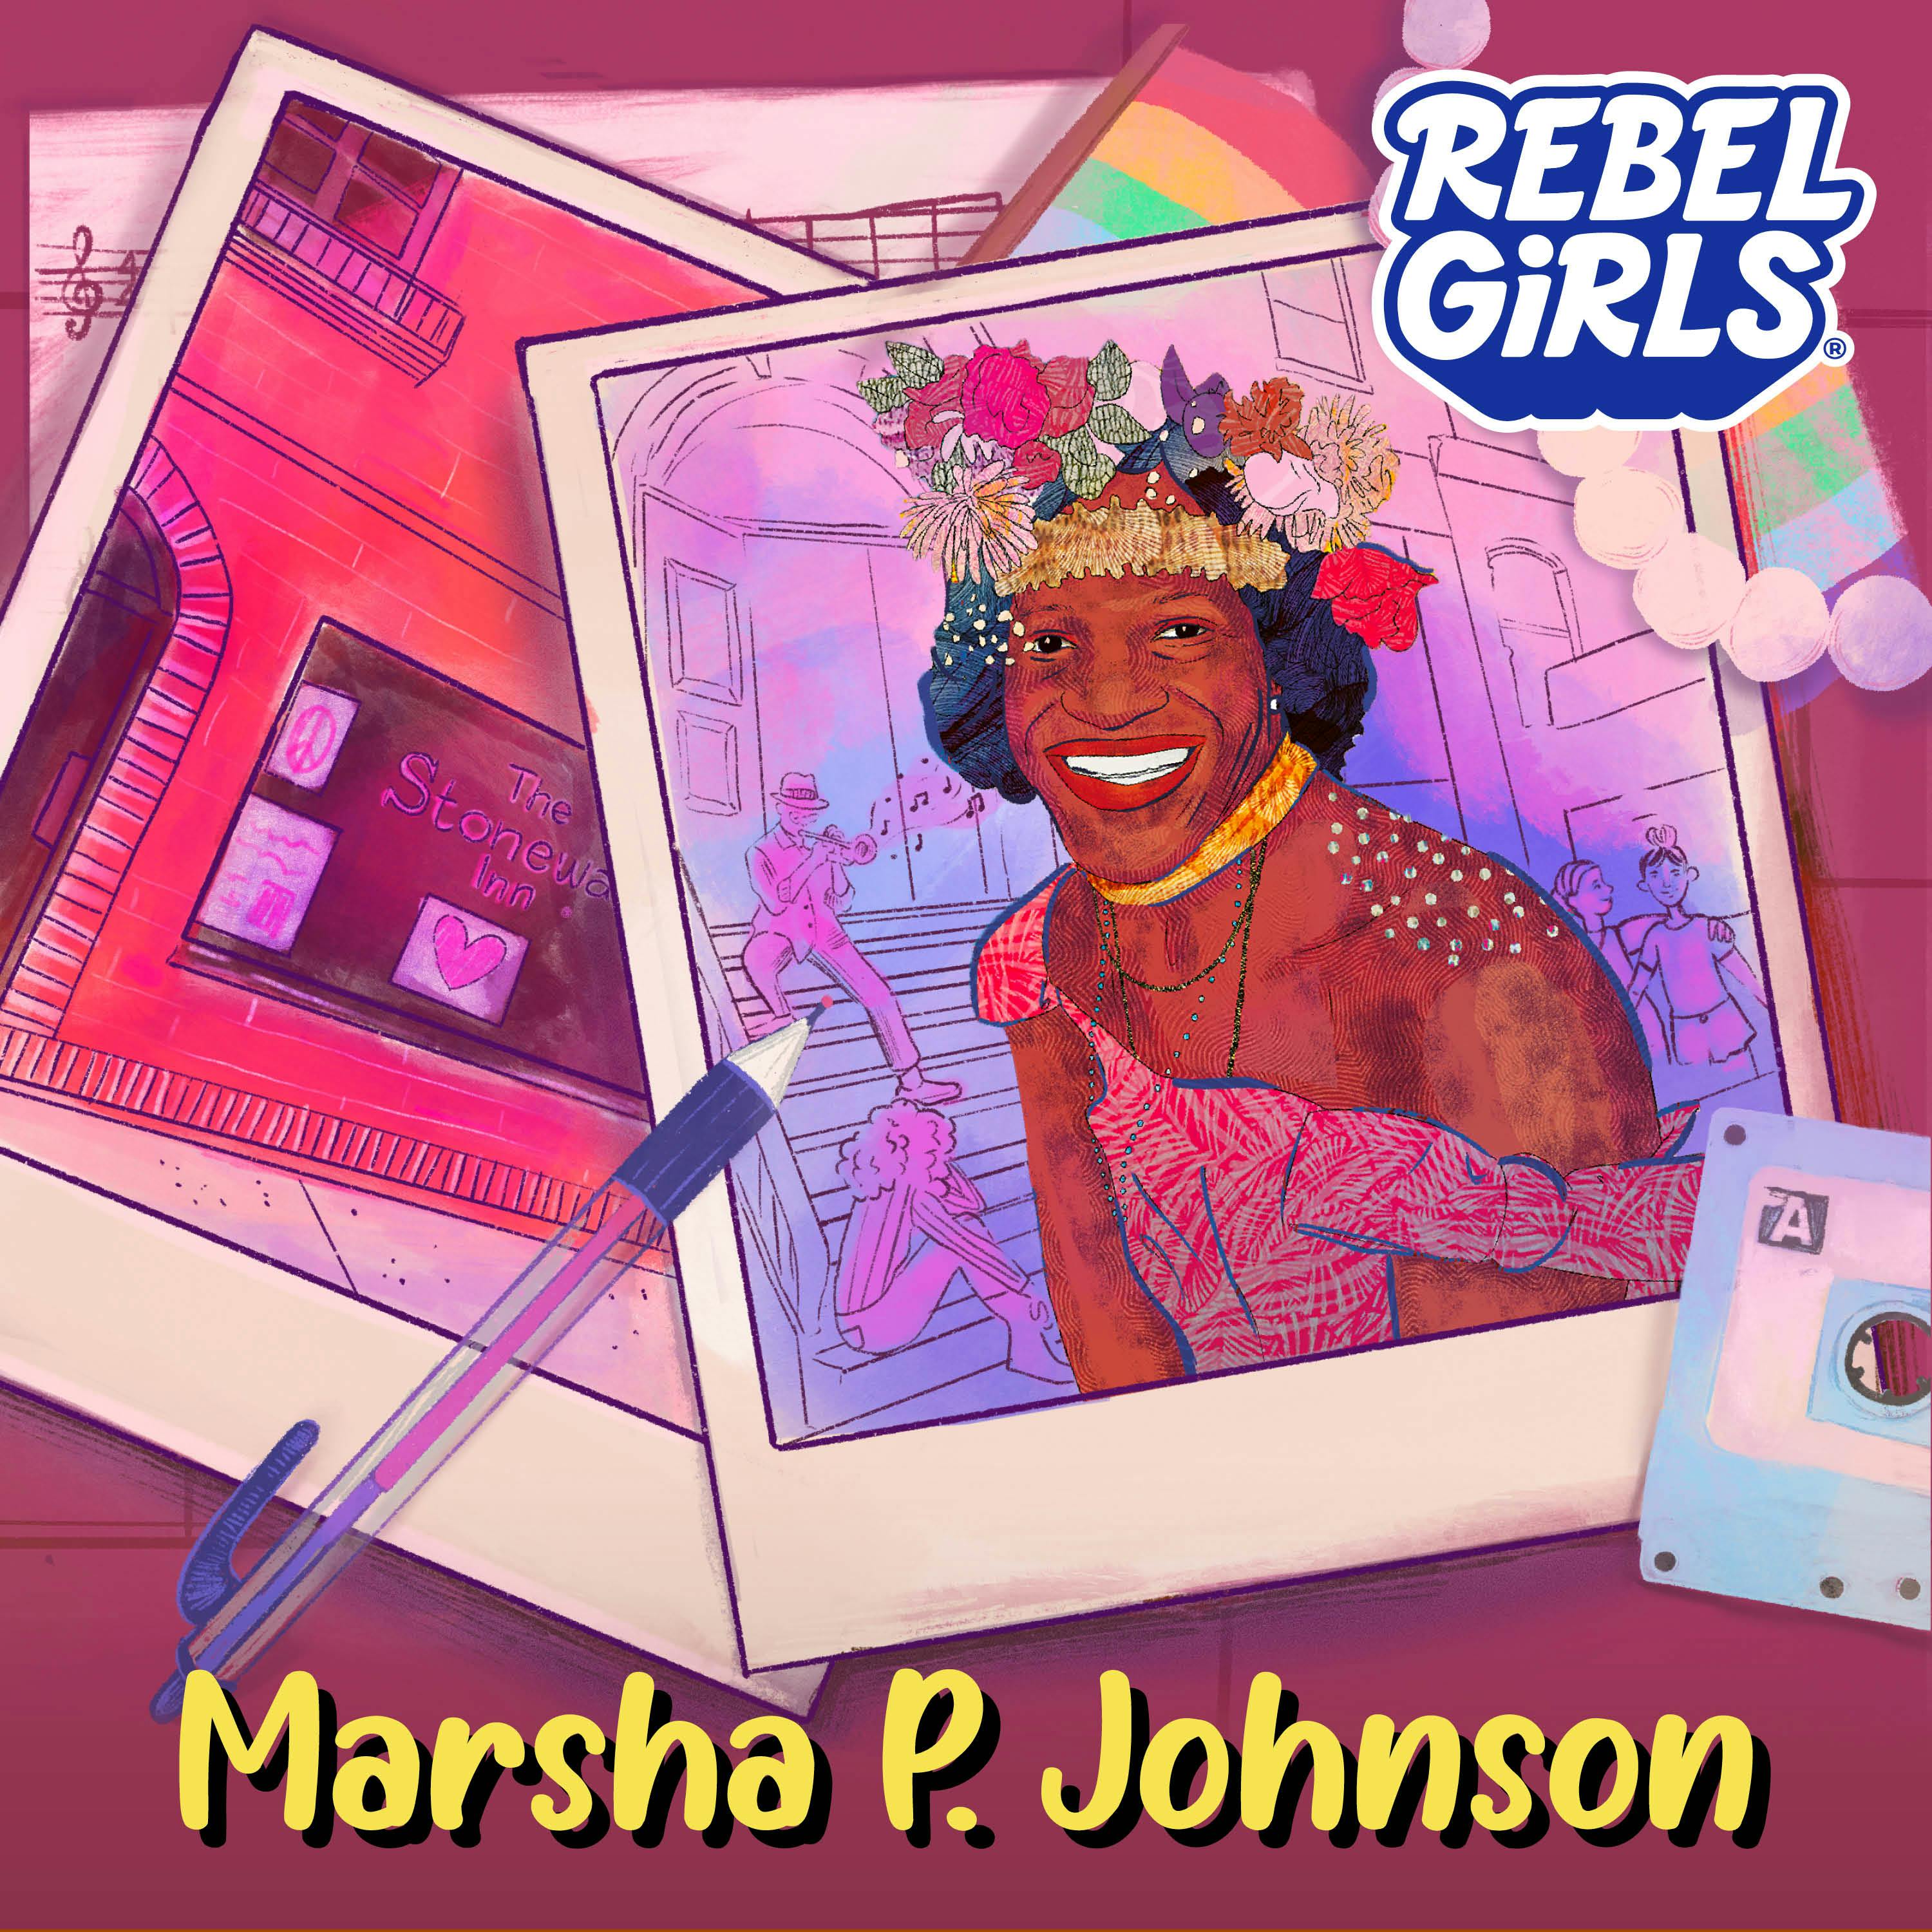 Marsha P. Johnson: Free to be SHE